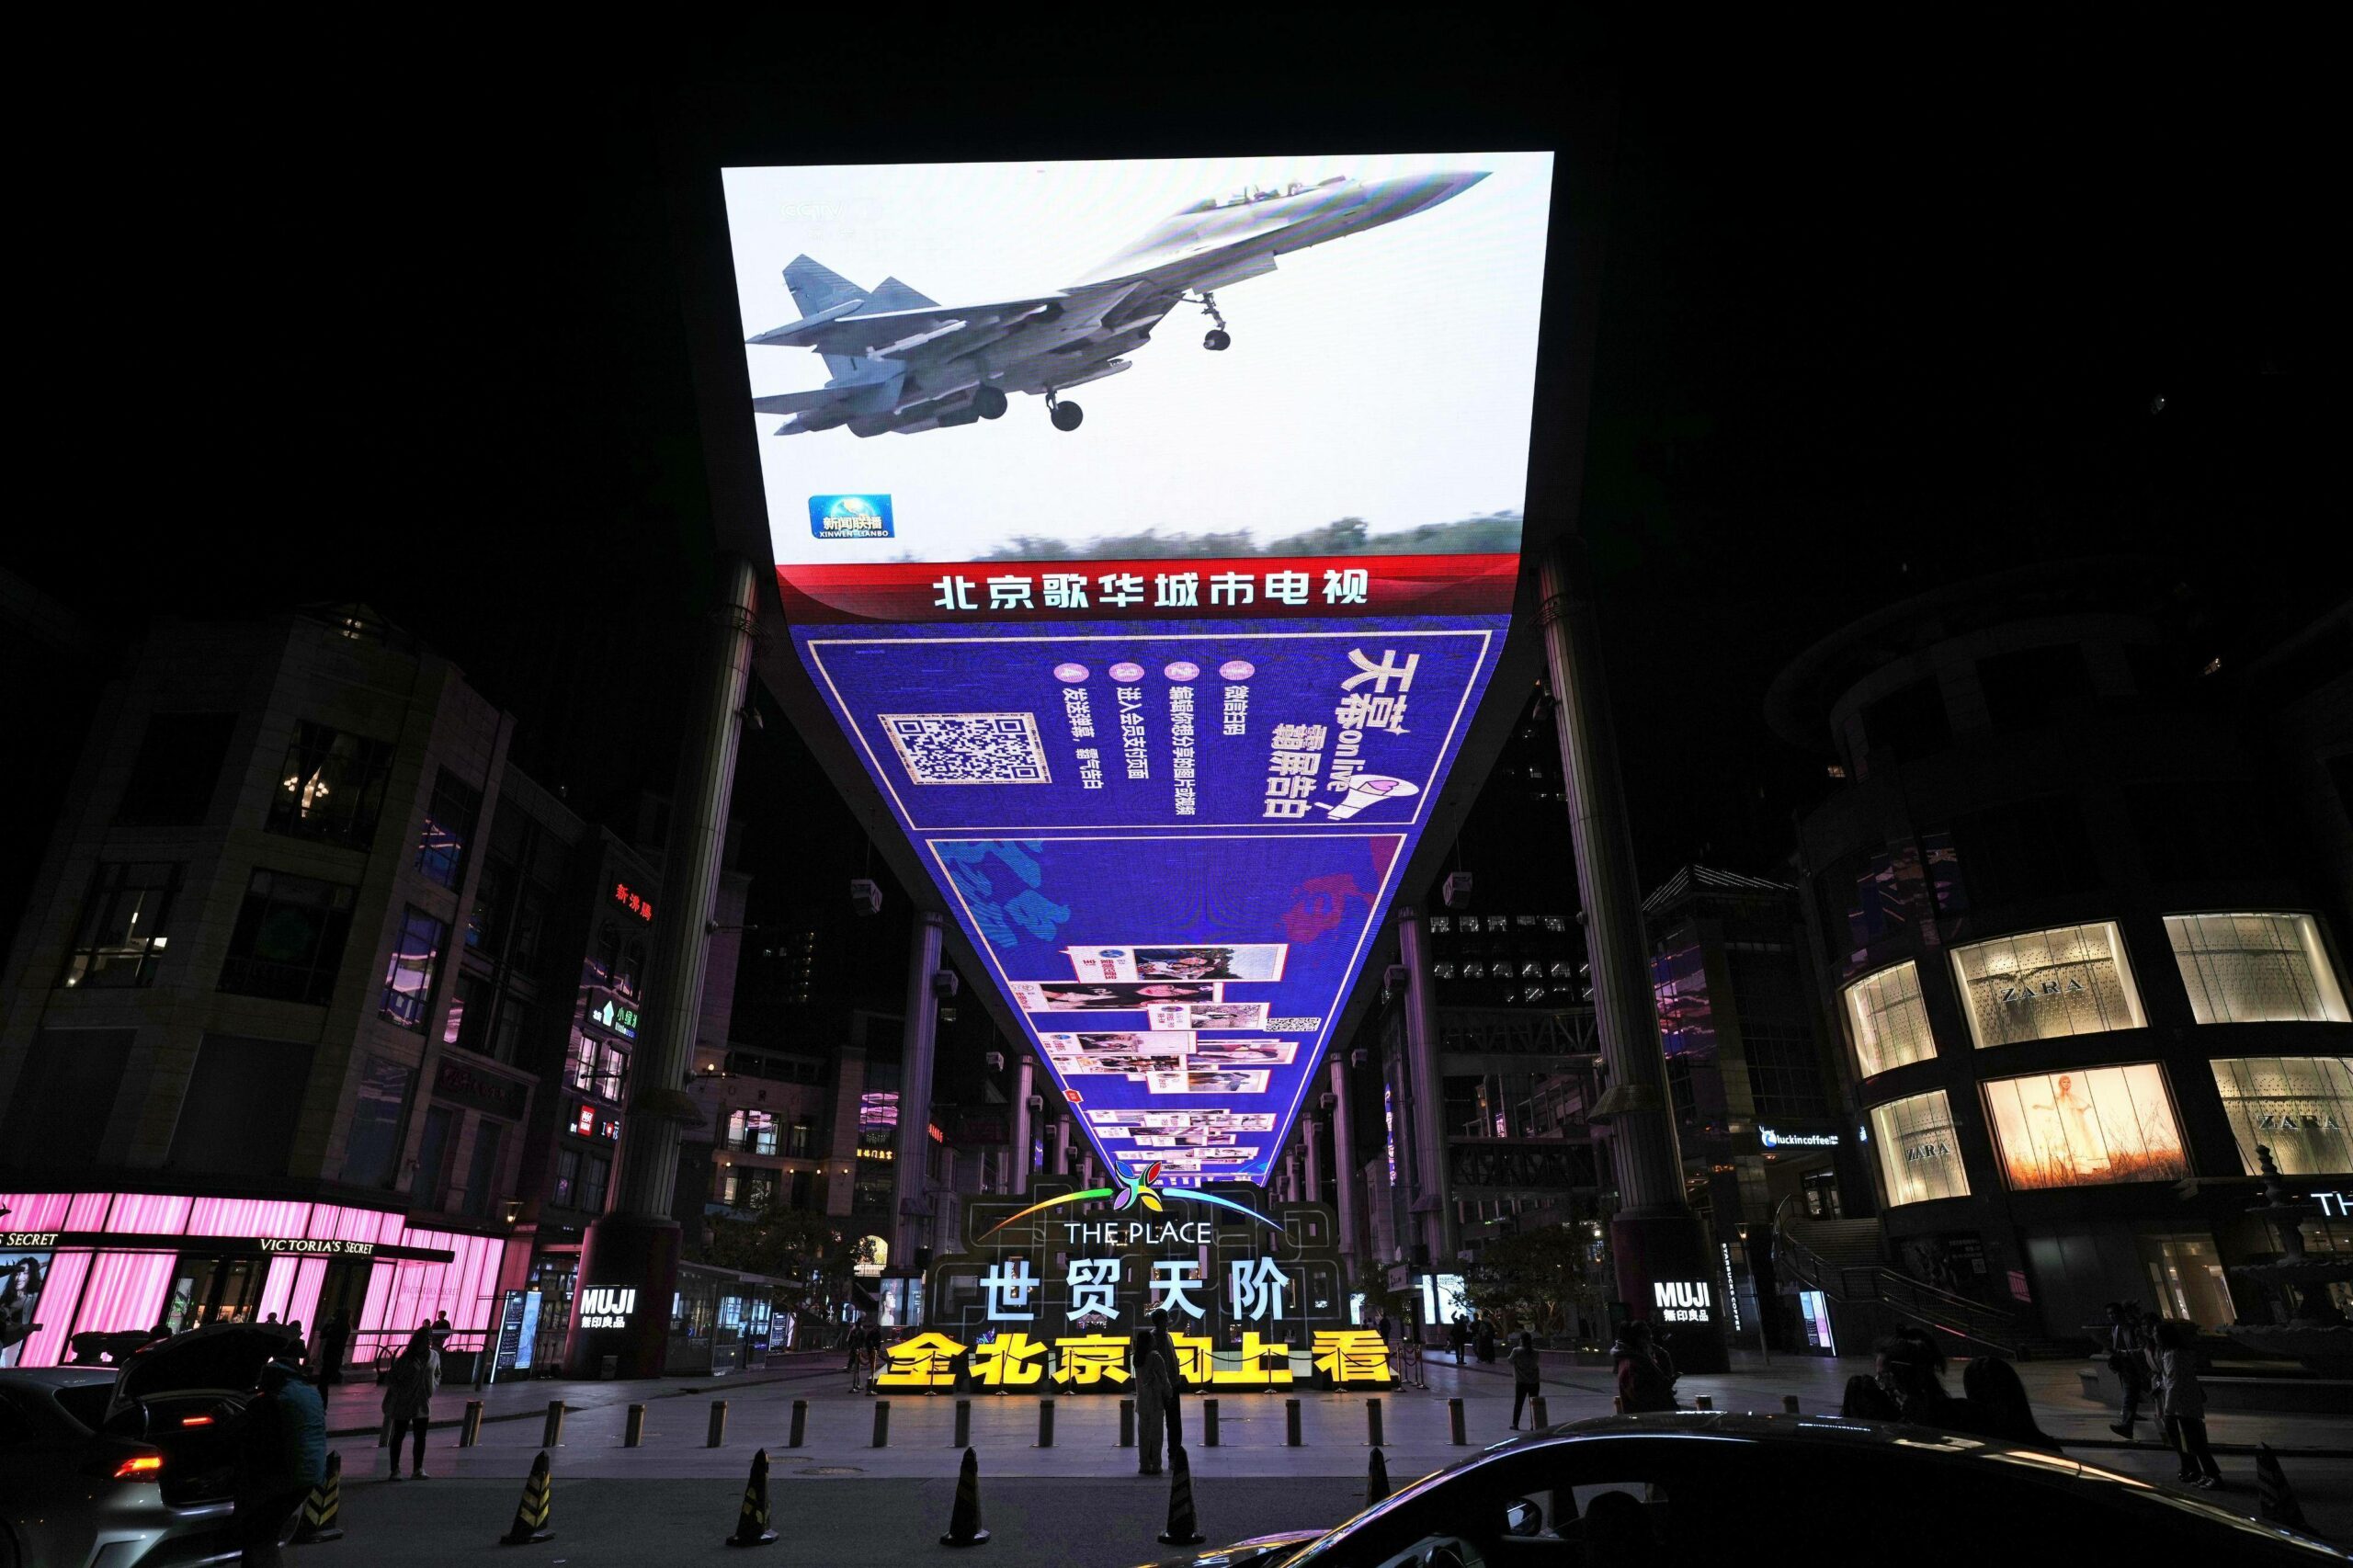 Ein großer Bildschirm auf einer Straße in Peking zeigt ein chinesisches Militärflugzeug, das an einer dreitägigen Luft- und Seeübung um Taiwan teilnimmt.